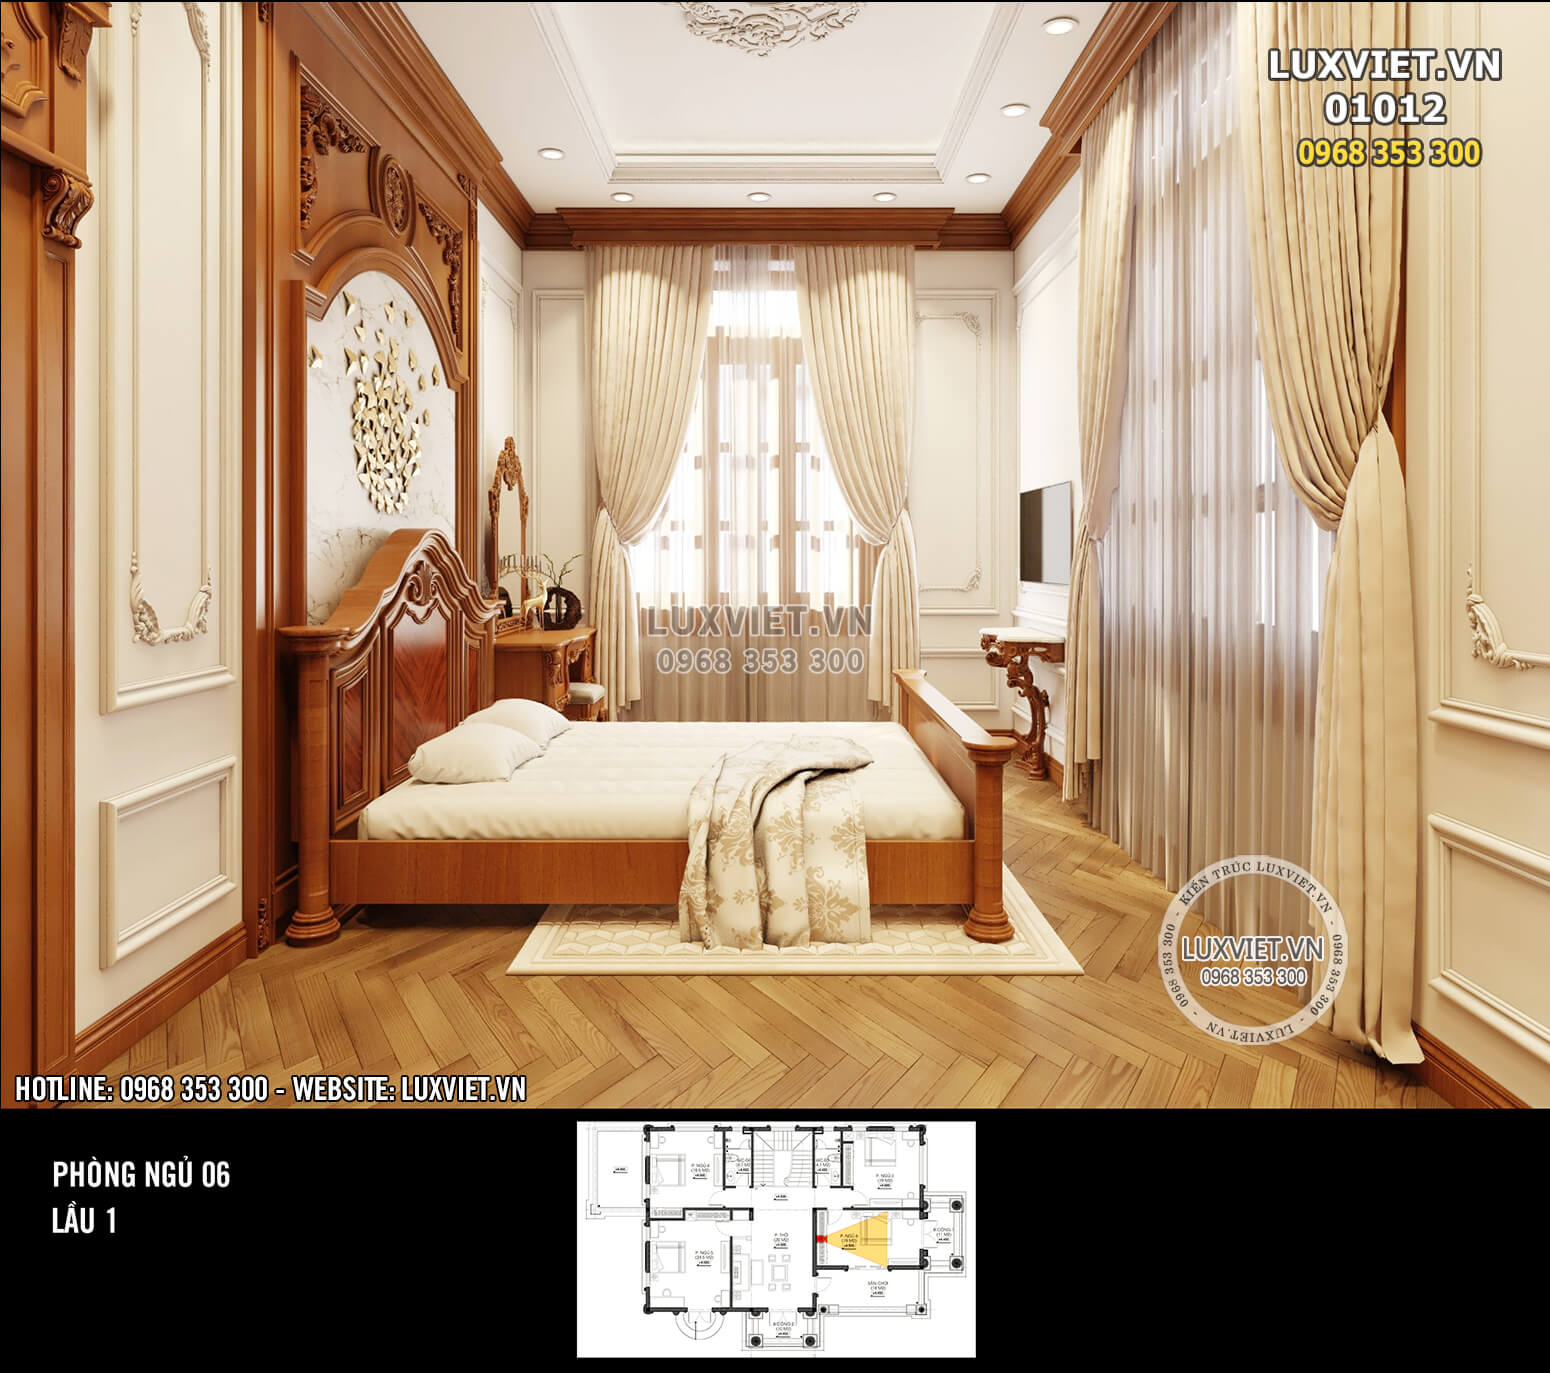 Hình ảnh: Không gian nội thất phòng ngủ 6 - phong cách tân cổ điển (lầu 1)